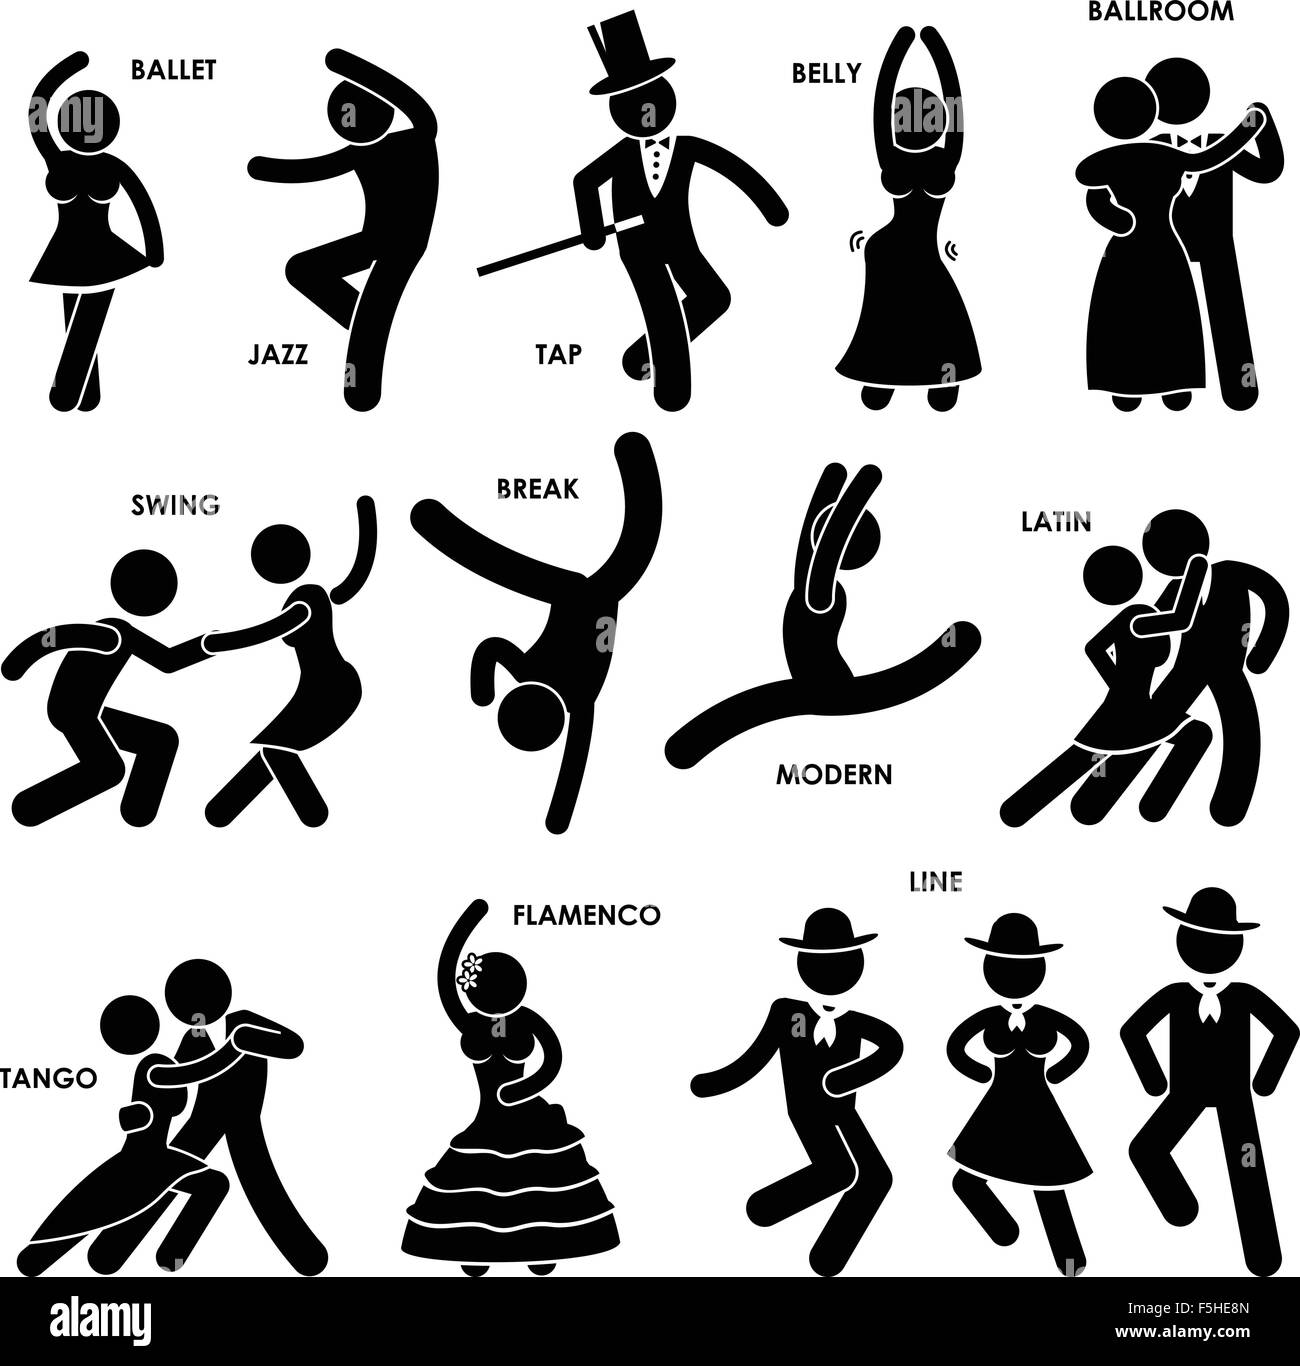 Ballerino di danza jazz Ballet tocca la sala da ballo pancia pausa Swing latino moderno Tango Flamenco linea di bastone Figura Icona pittogramma Illustrazione Vettoriale